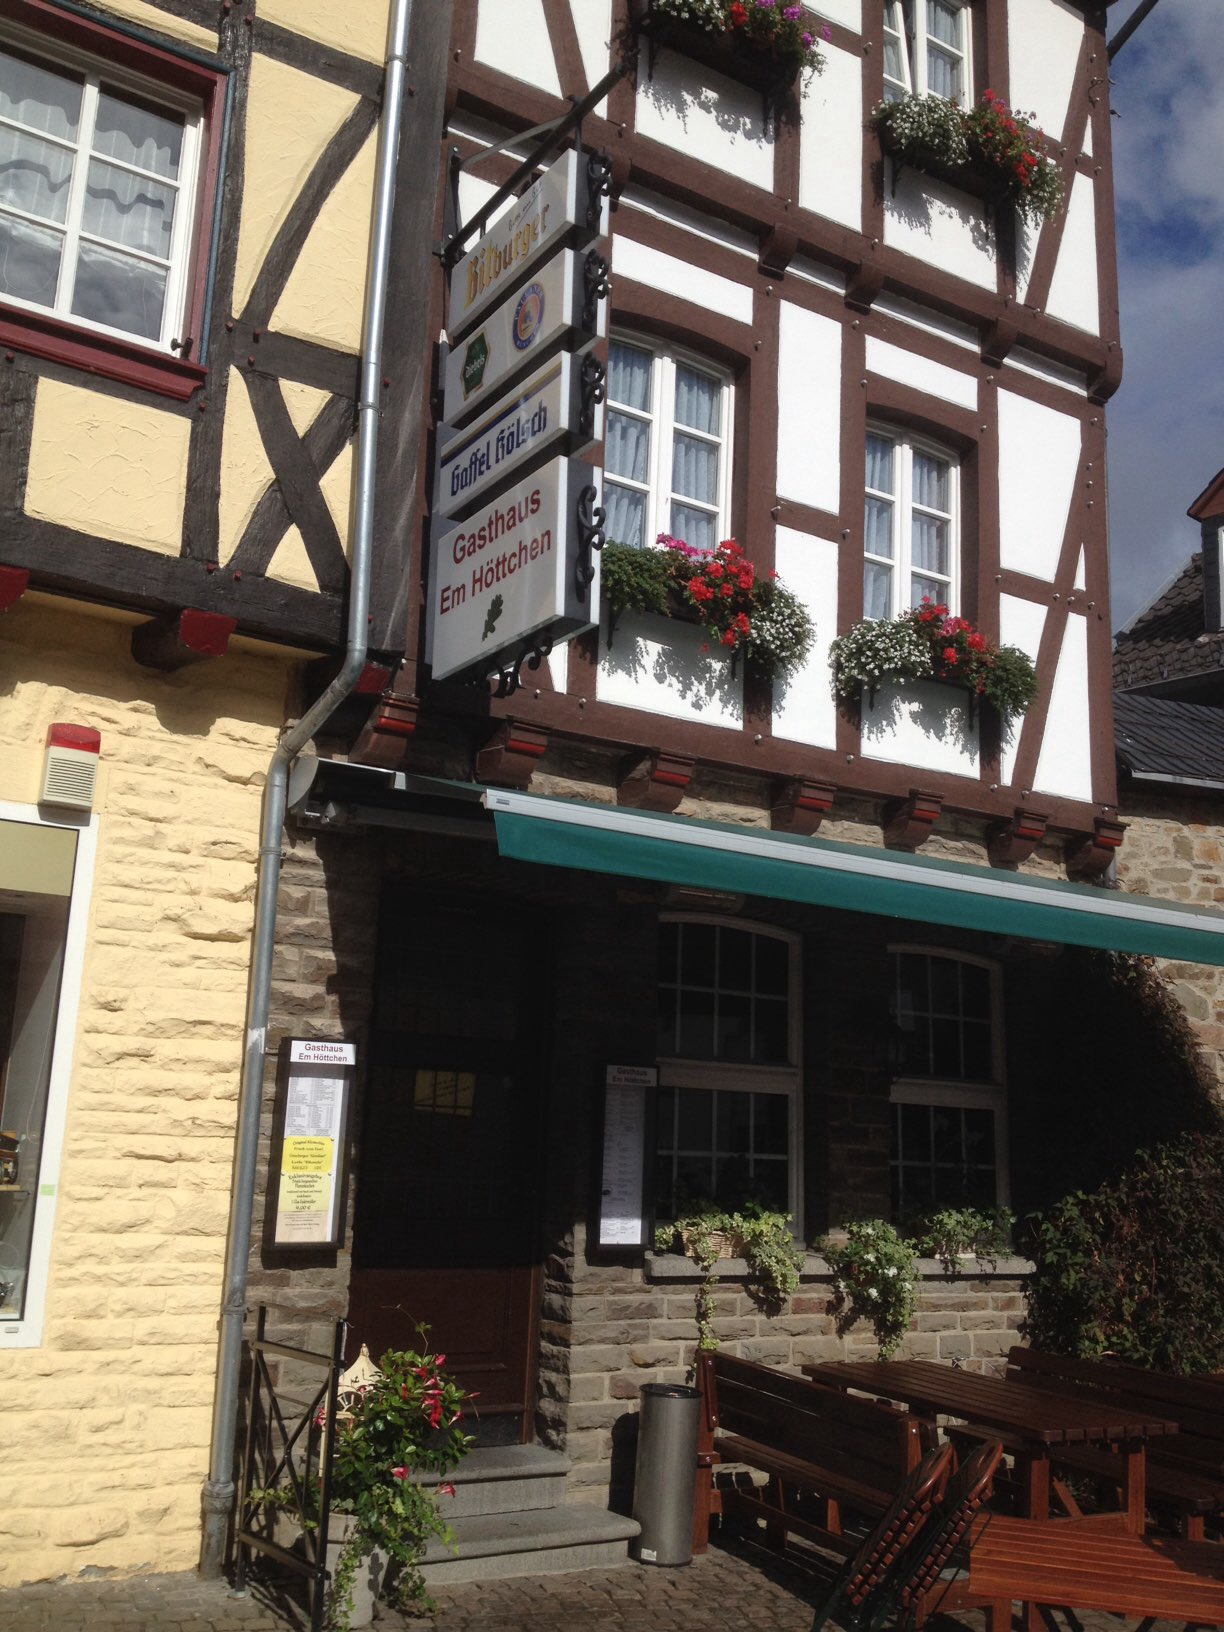 Bild 2 Restaurant Em Höttchen in Bad Münstereifel